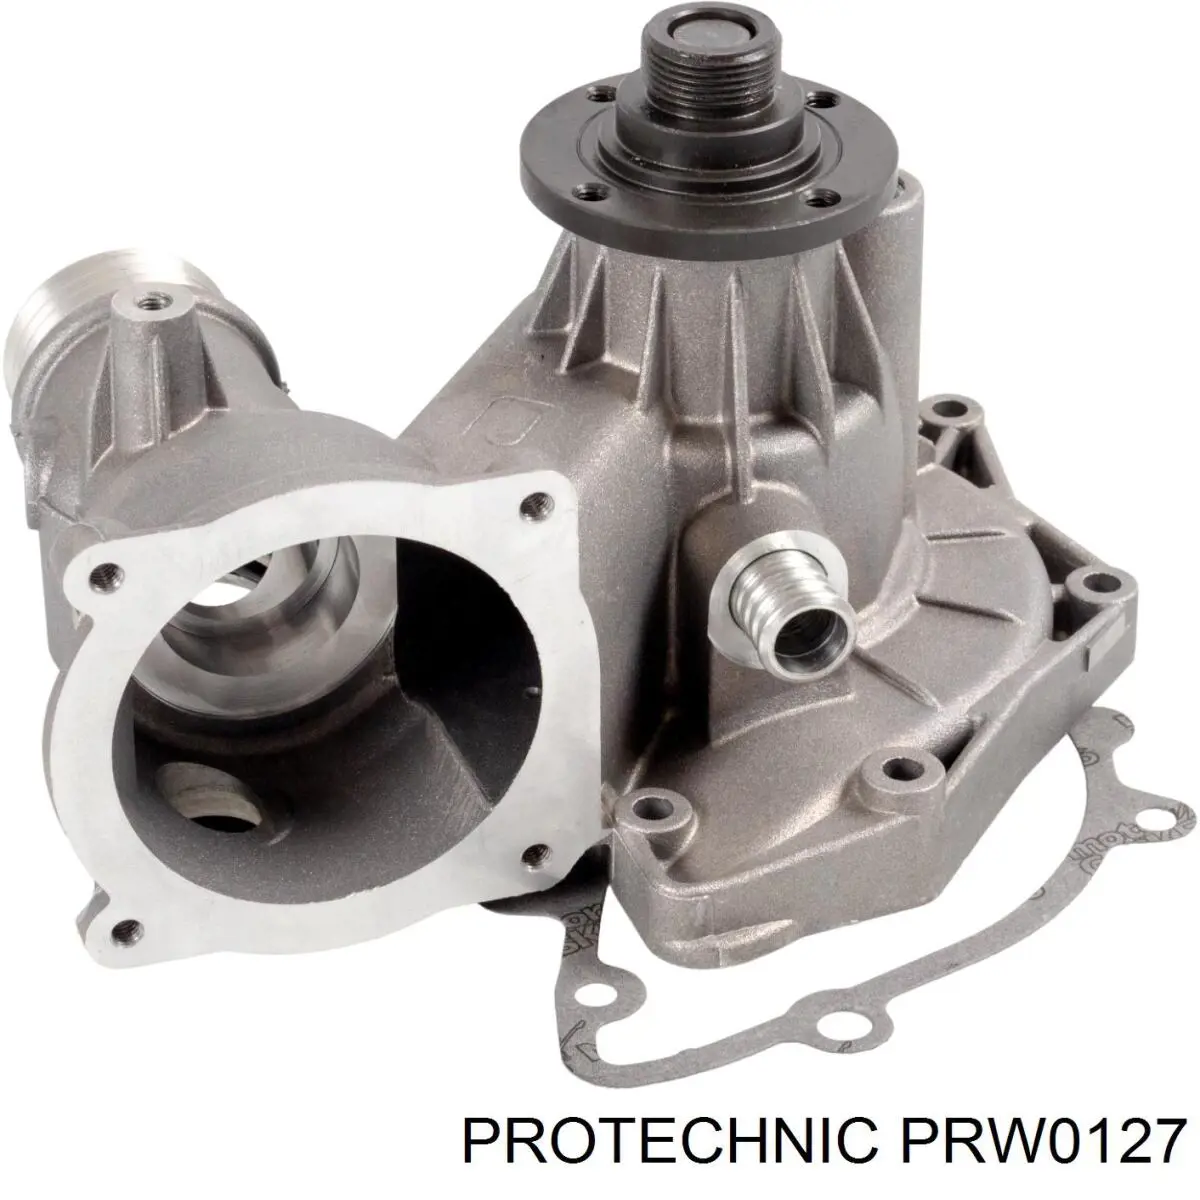 PRW0127 Protechnic bomba de agua